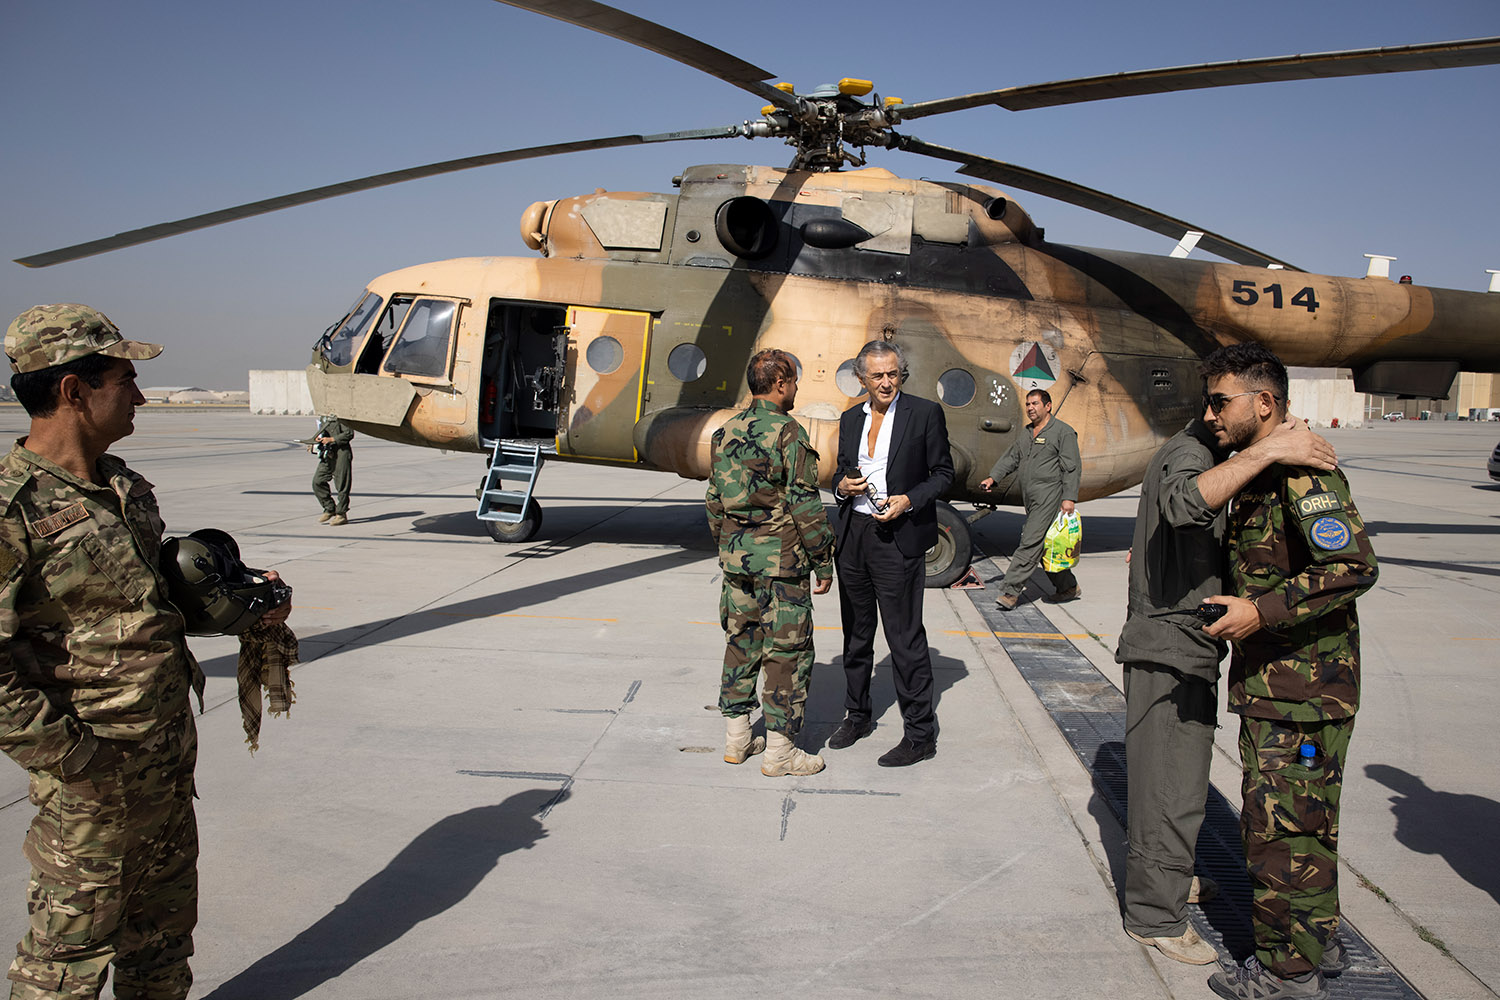 Bernard-Henri Lévy et quatre militaires sur la piste d'un aéroport à Kaboul devant un hélicoptère militaire